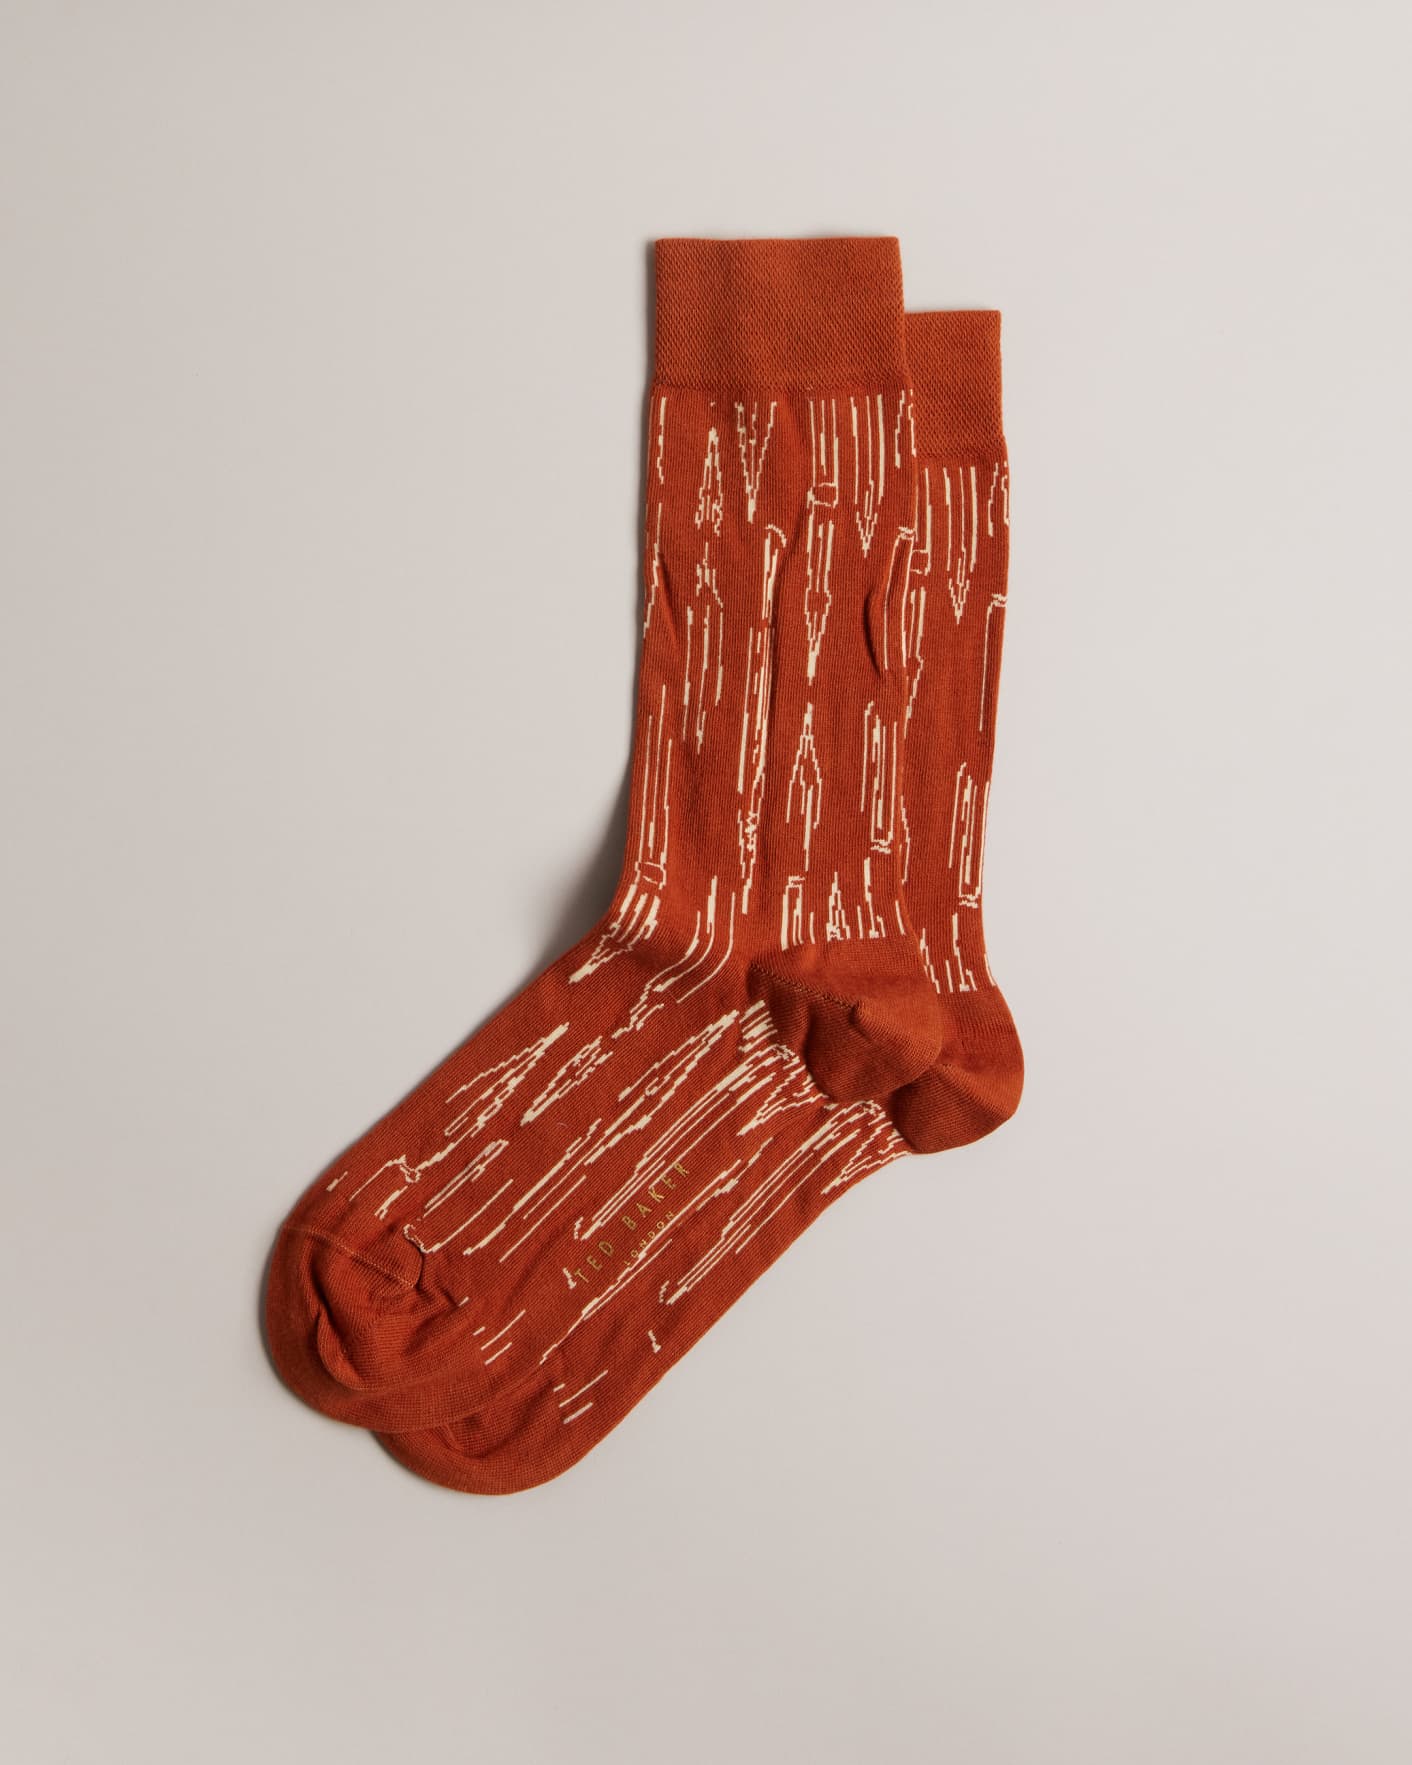 Ted Baker Hoisted Socks - 3 Pair Packs in various colours/styles